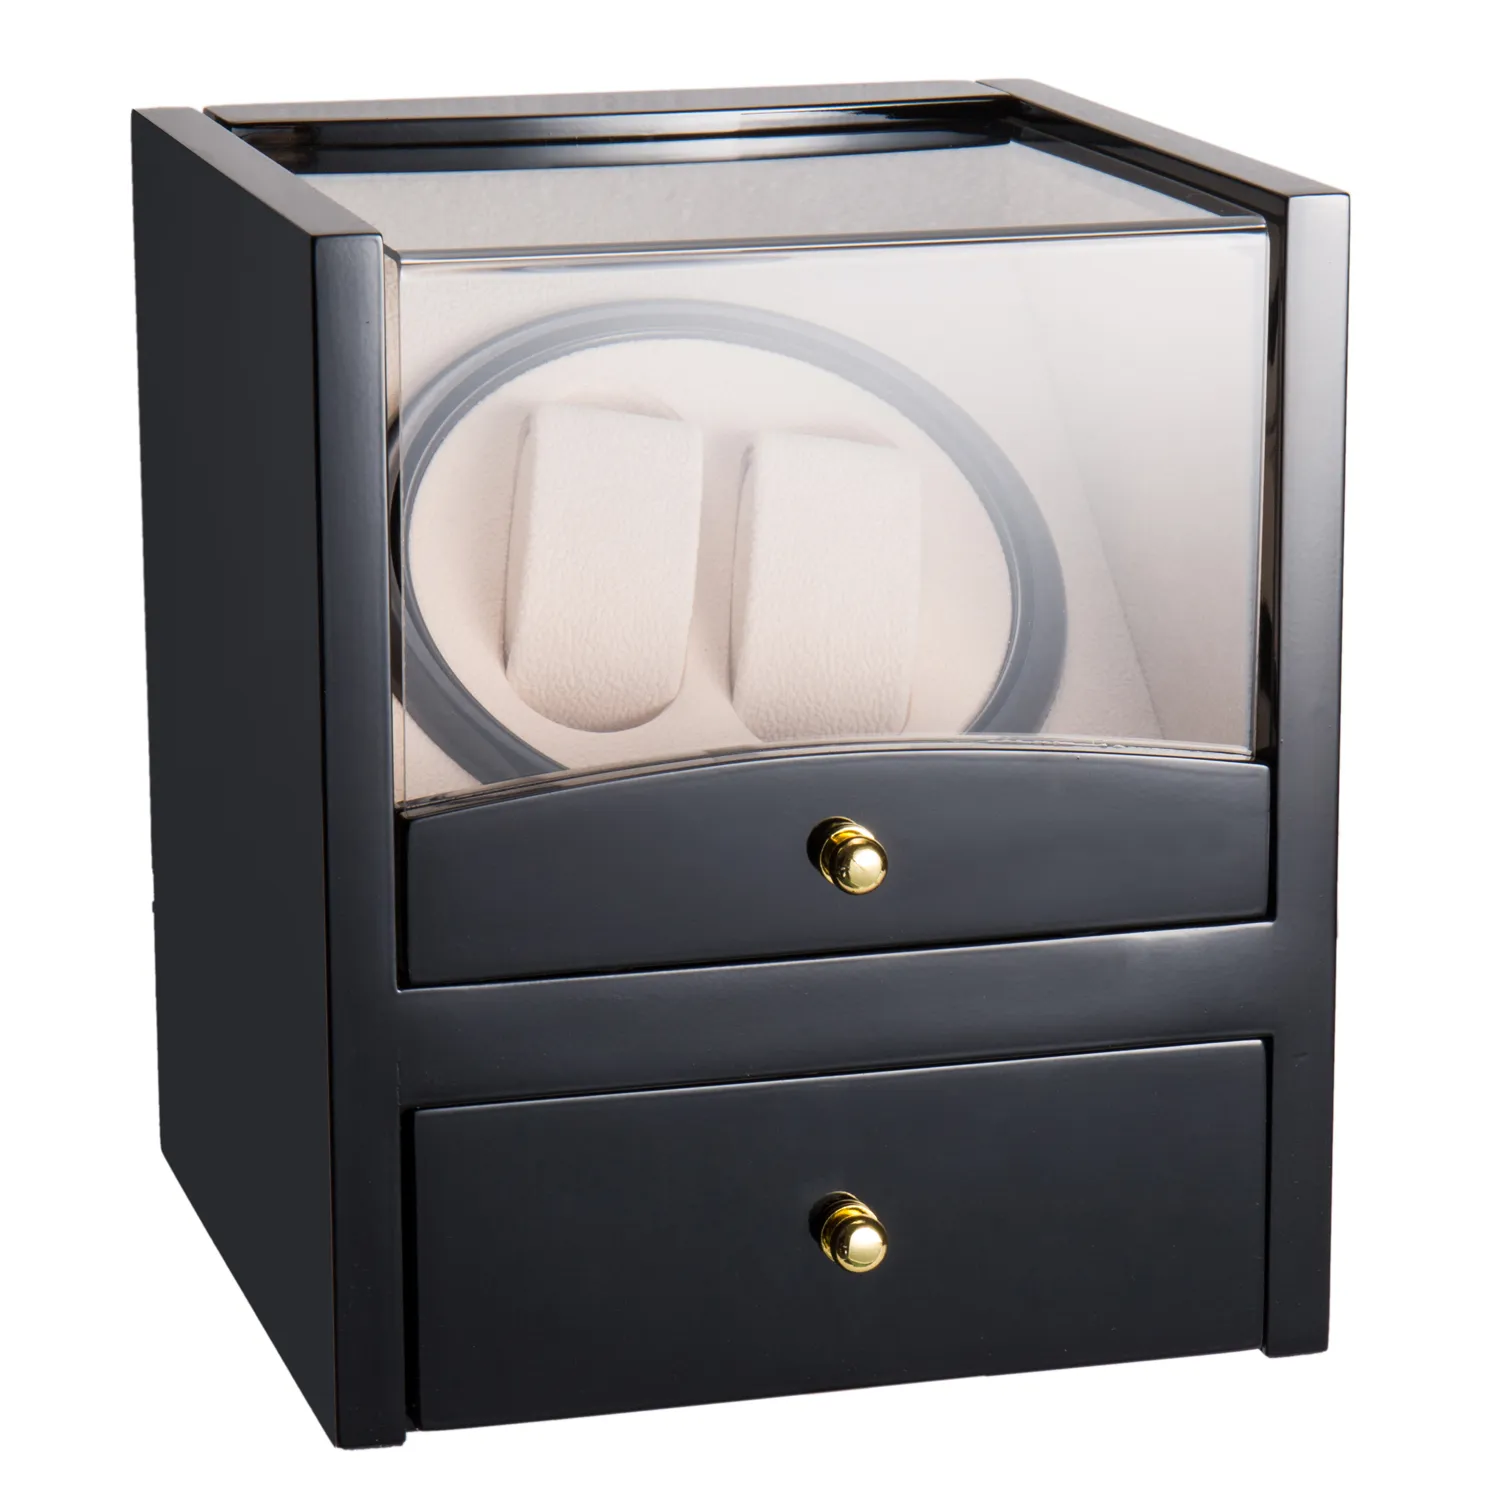 EU Stock Watch Winder caixa de exibição rotação automática de armazenamento Casos 2 Grades de madeira com jóia PU Leather Box